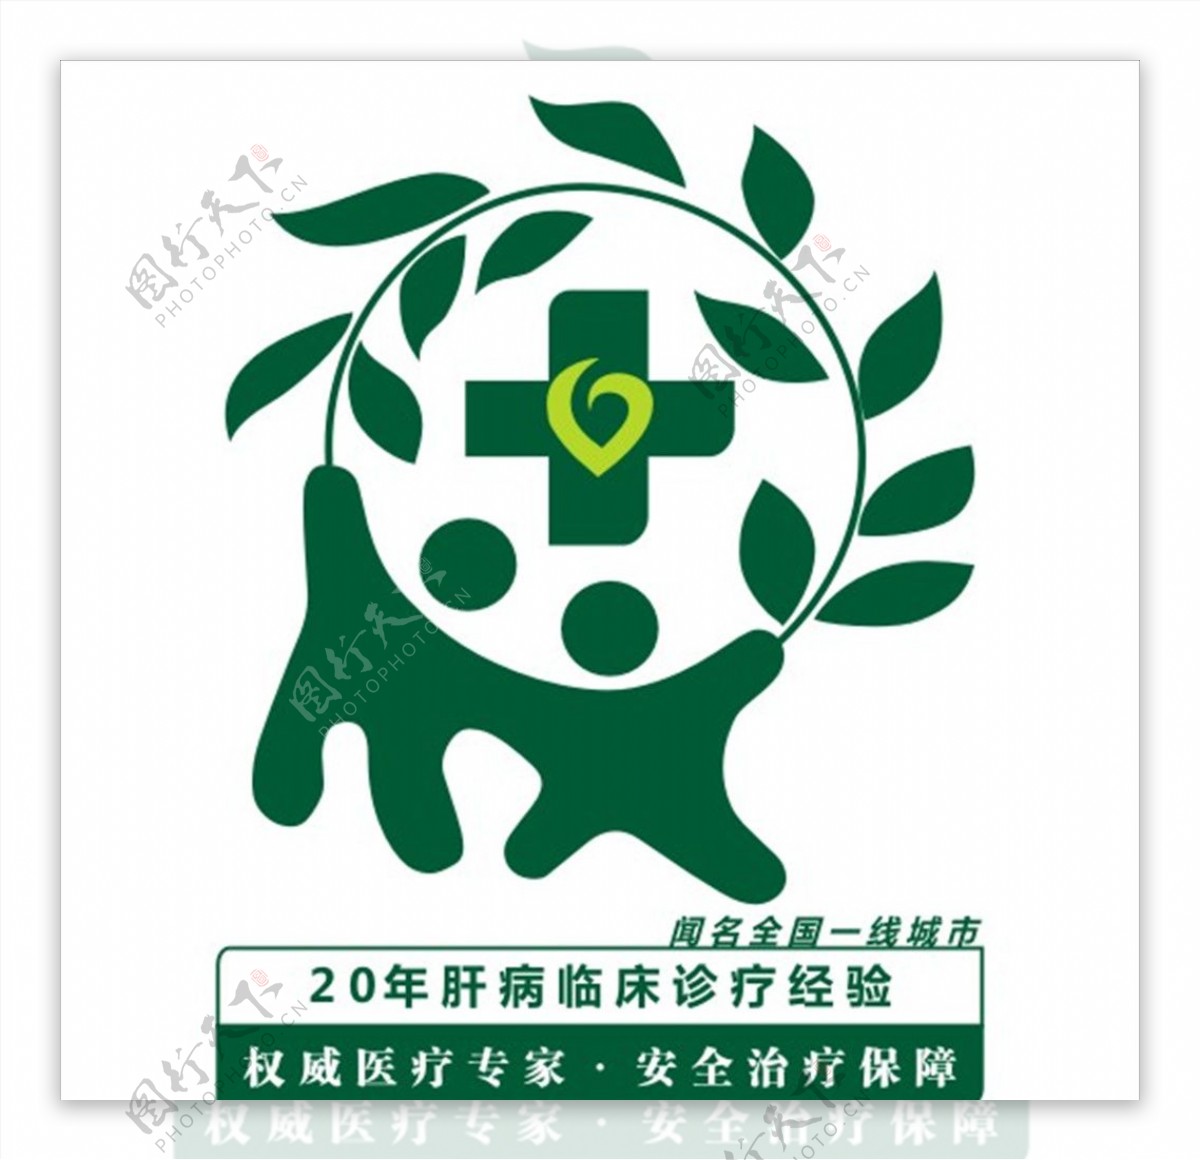 医疗肝病logo